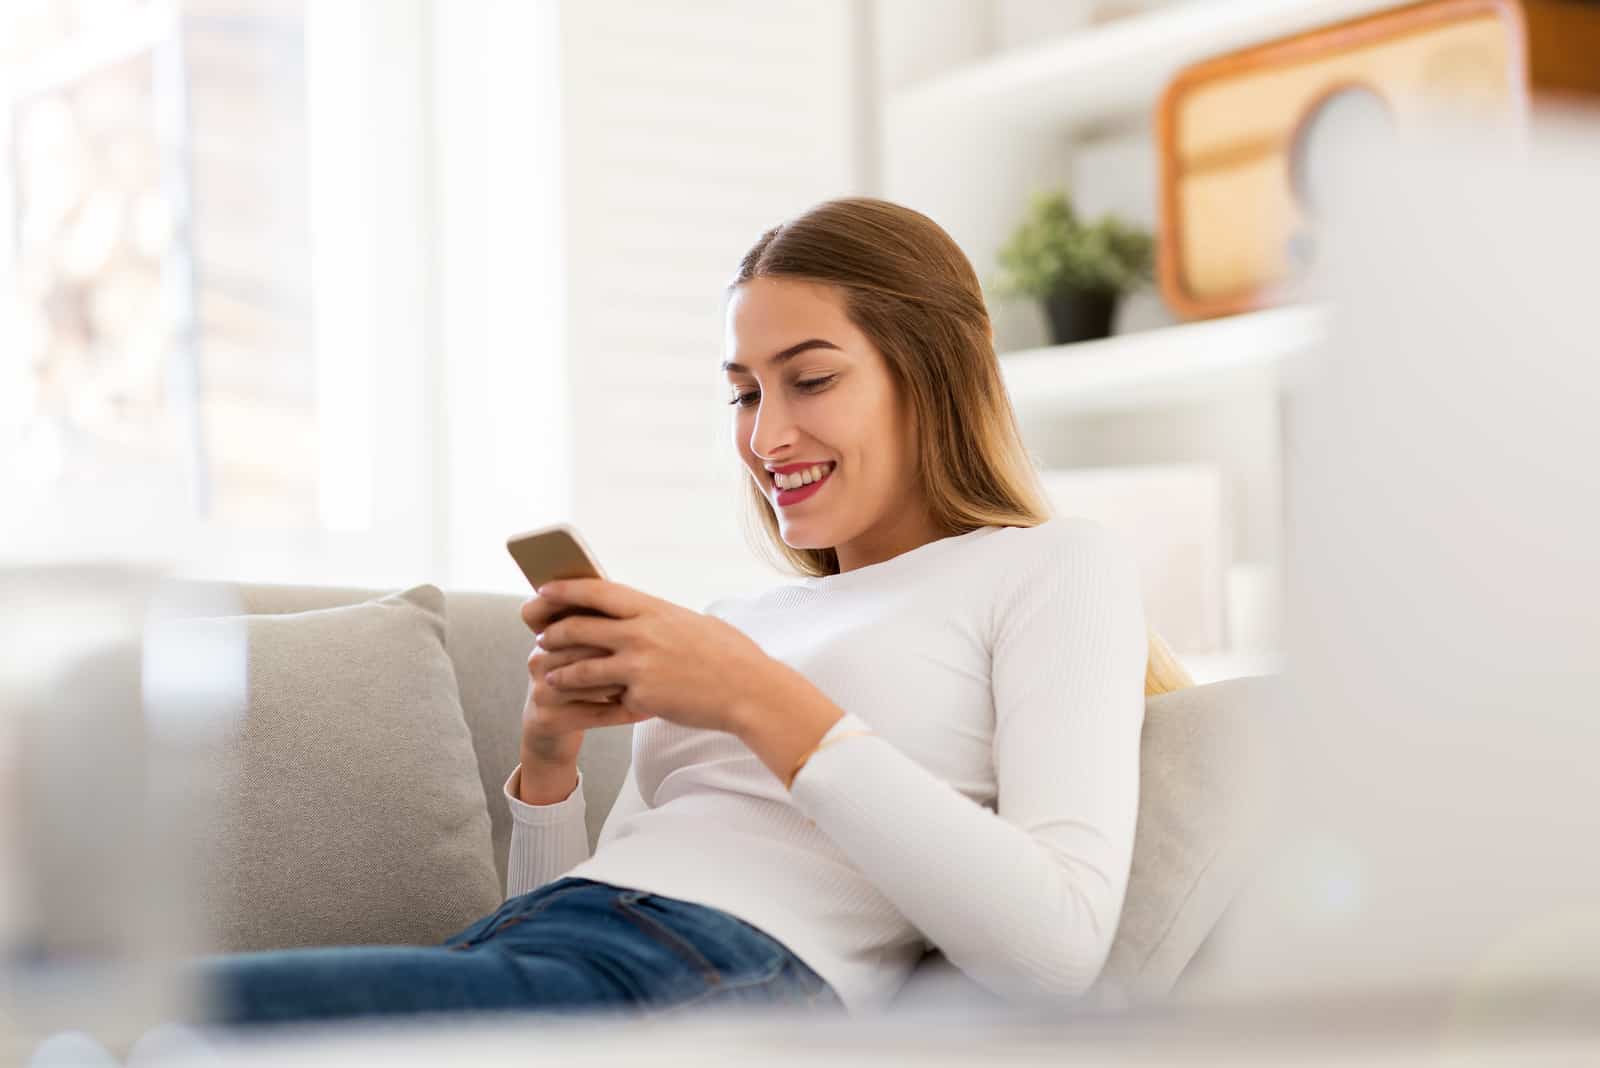 femme heureuse envoyant des textos assise sur un canapé